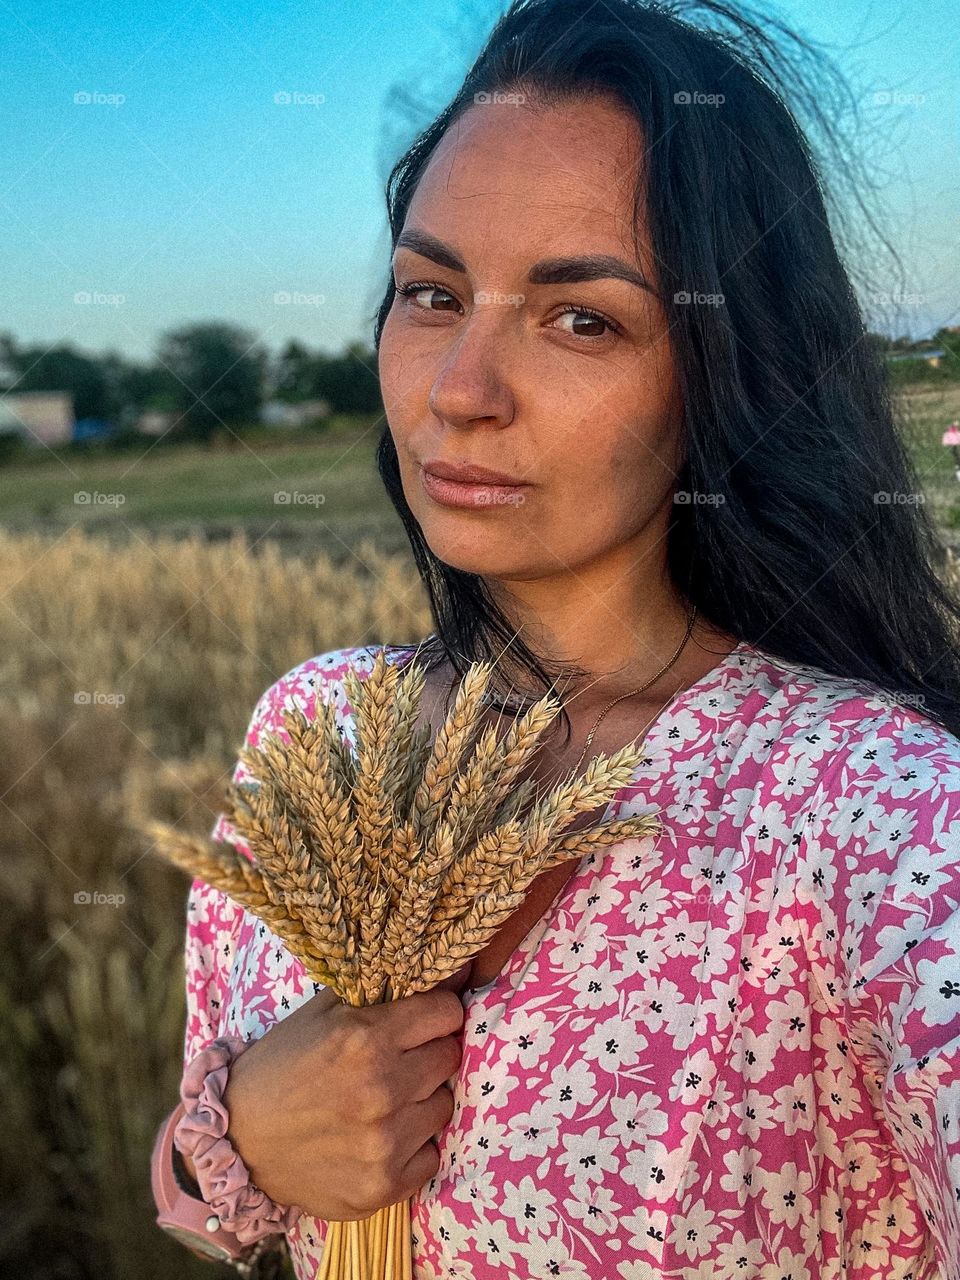 Selfie in a wheat field